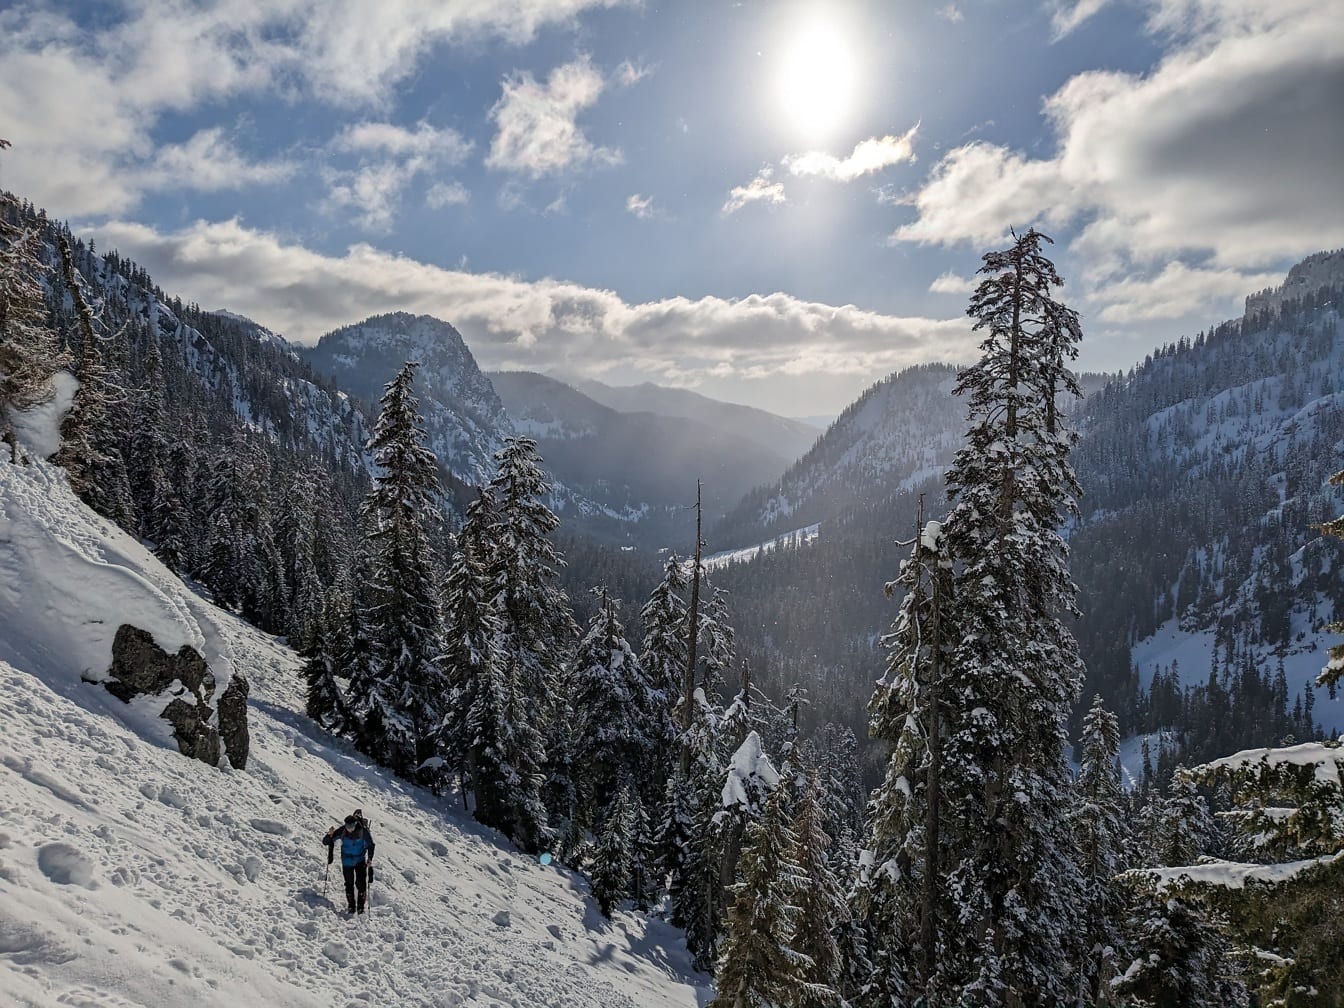 Esquiador caminhando em encosta nevada coberta de árvores de coníferas